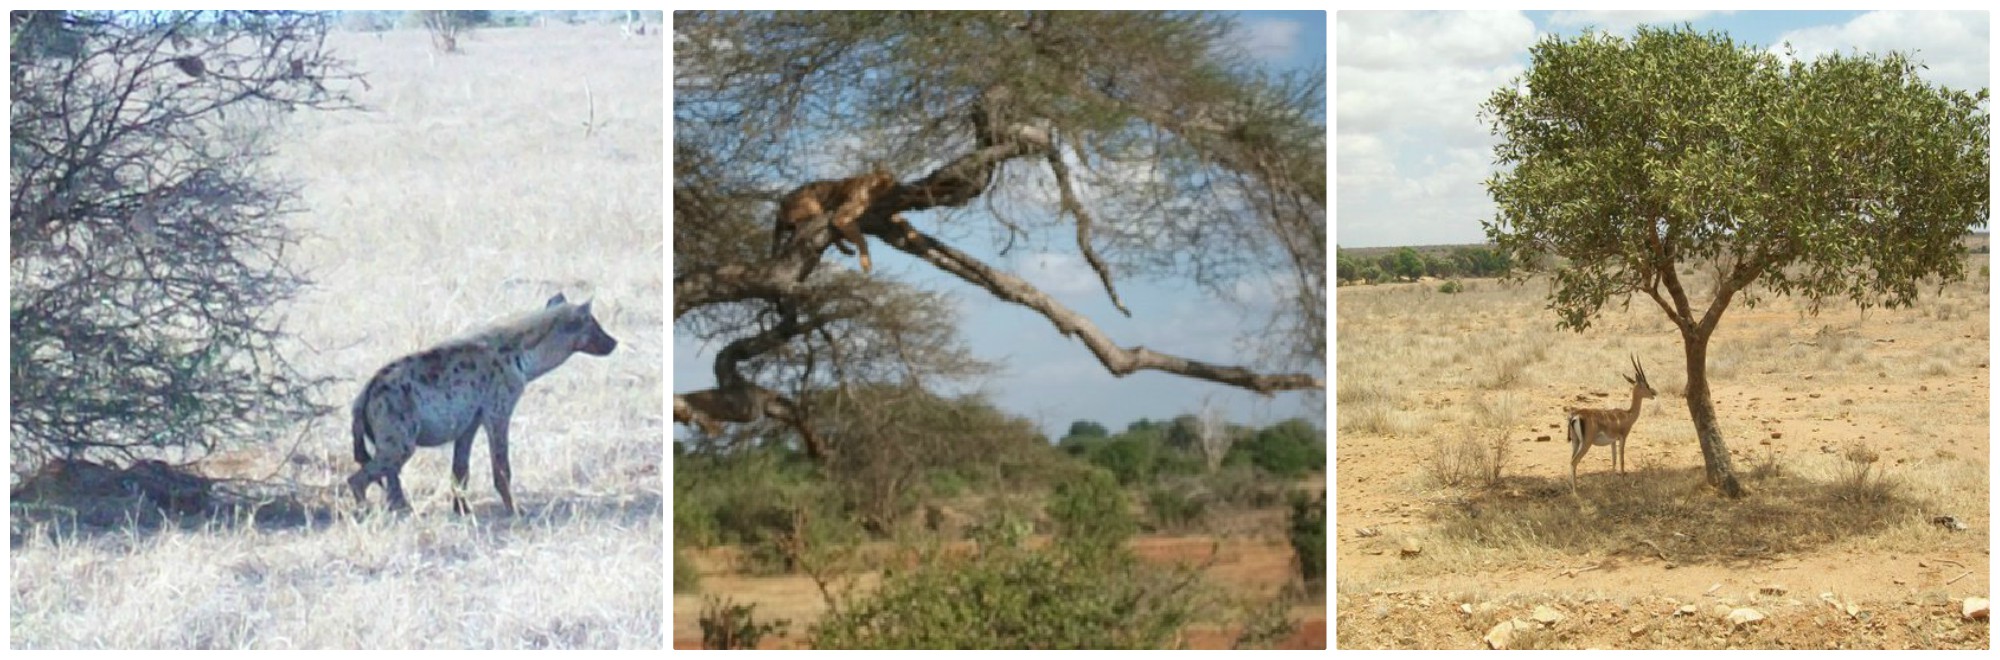 Safari Tsavo East in Kenya